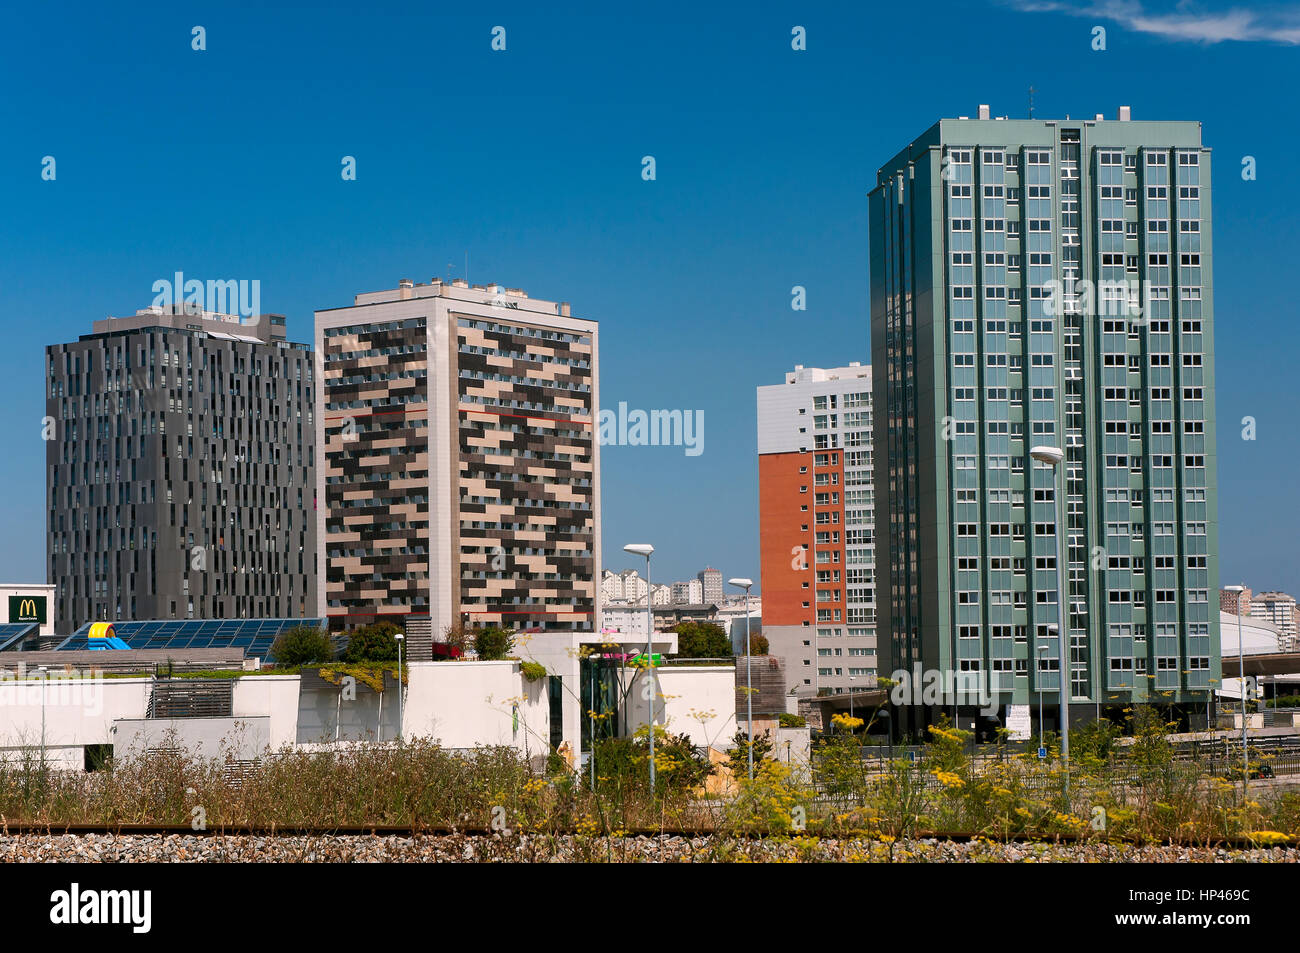 Vue urbaine avec de grands bâtiments, La Corogne, une région de Galice, Espagne, Europe Banque D'Images